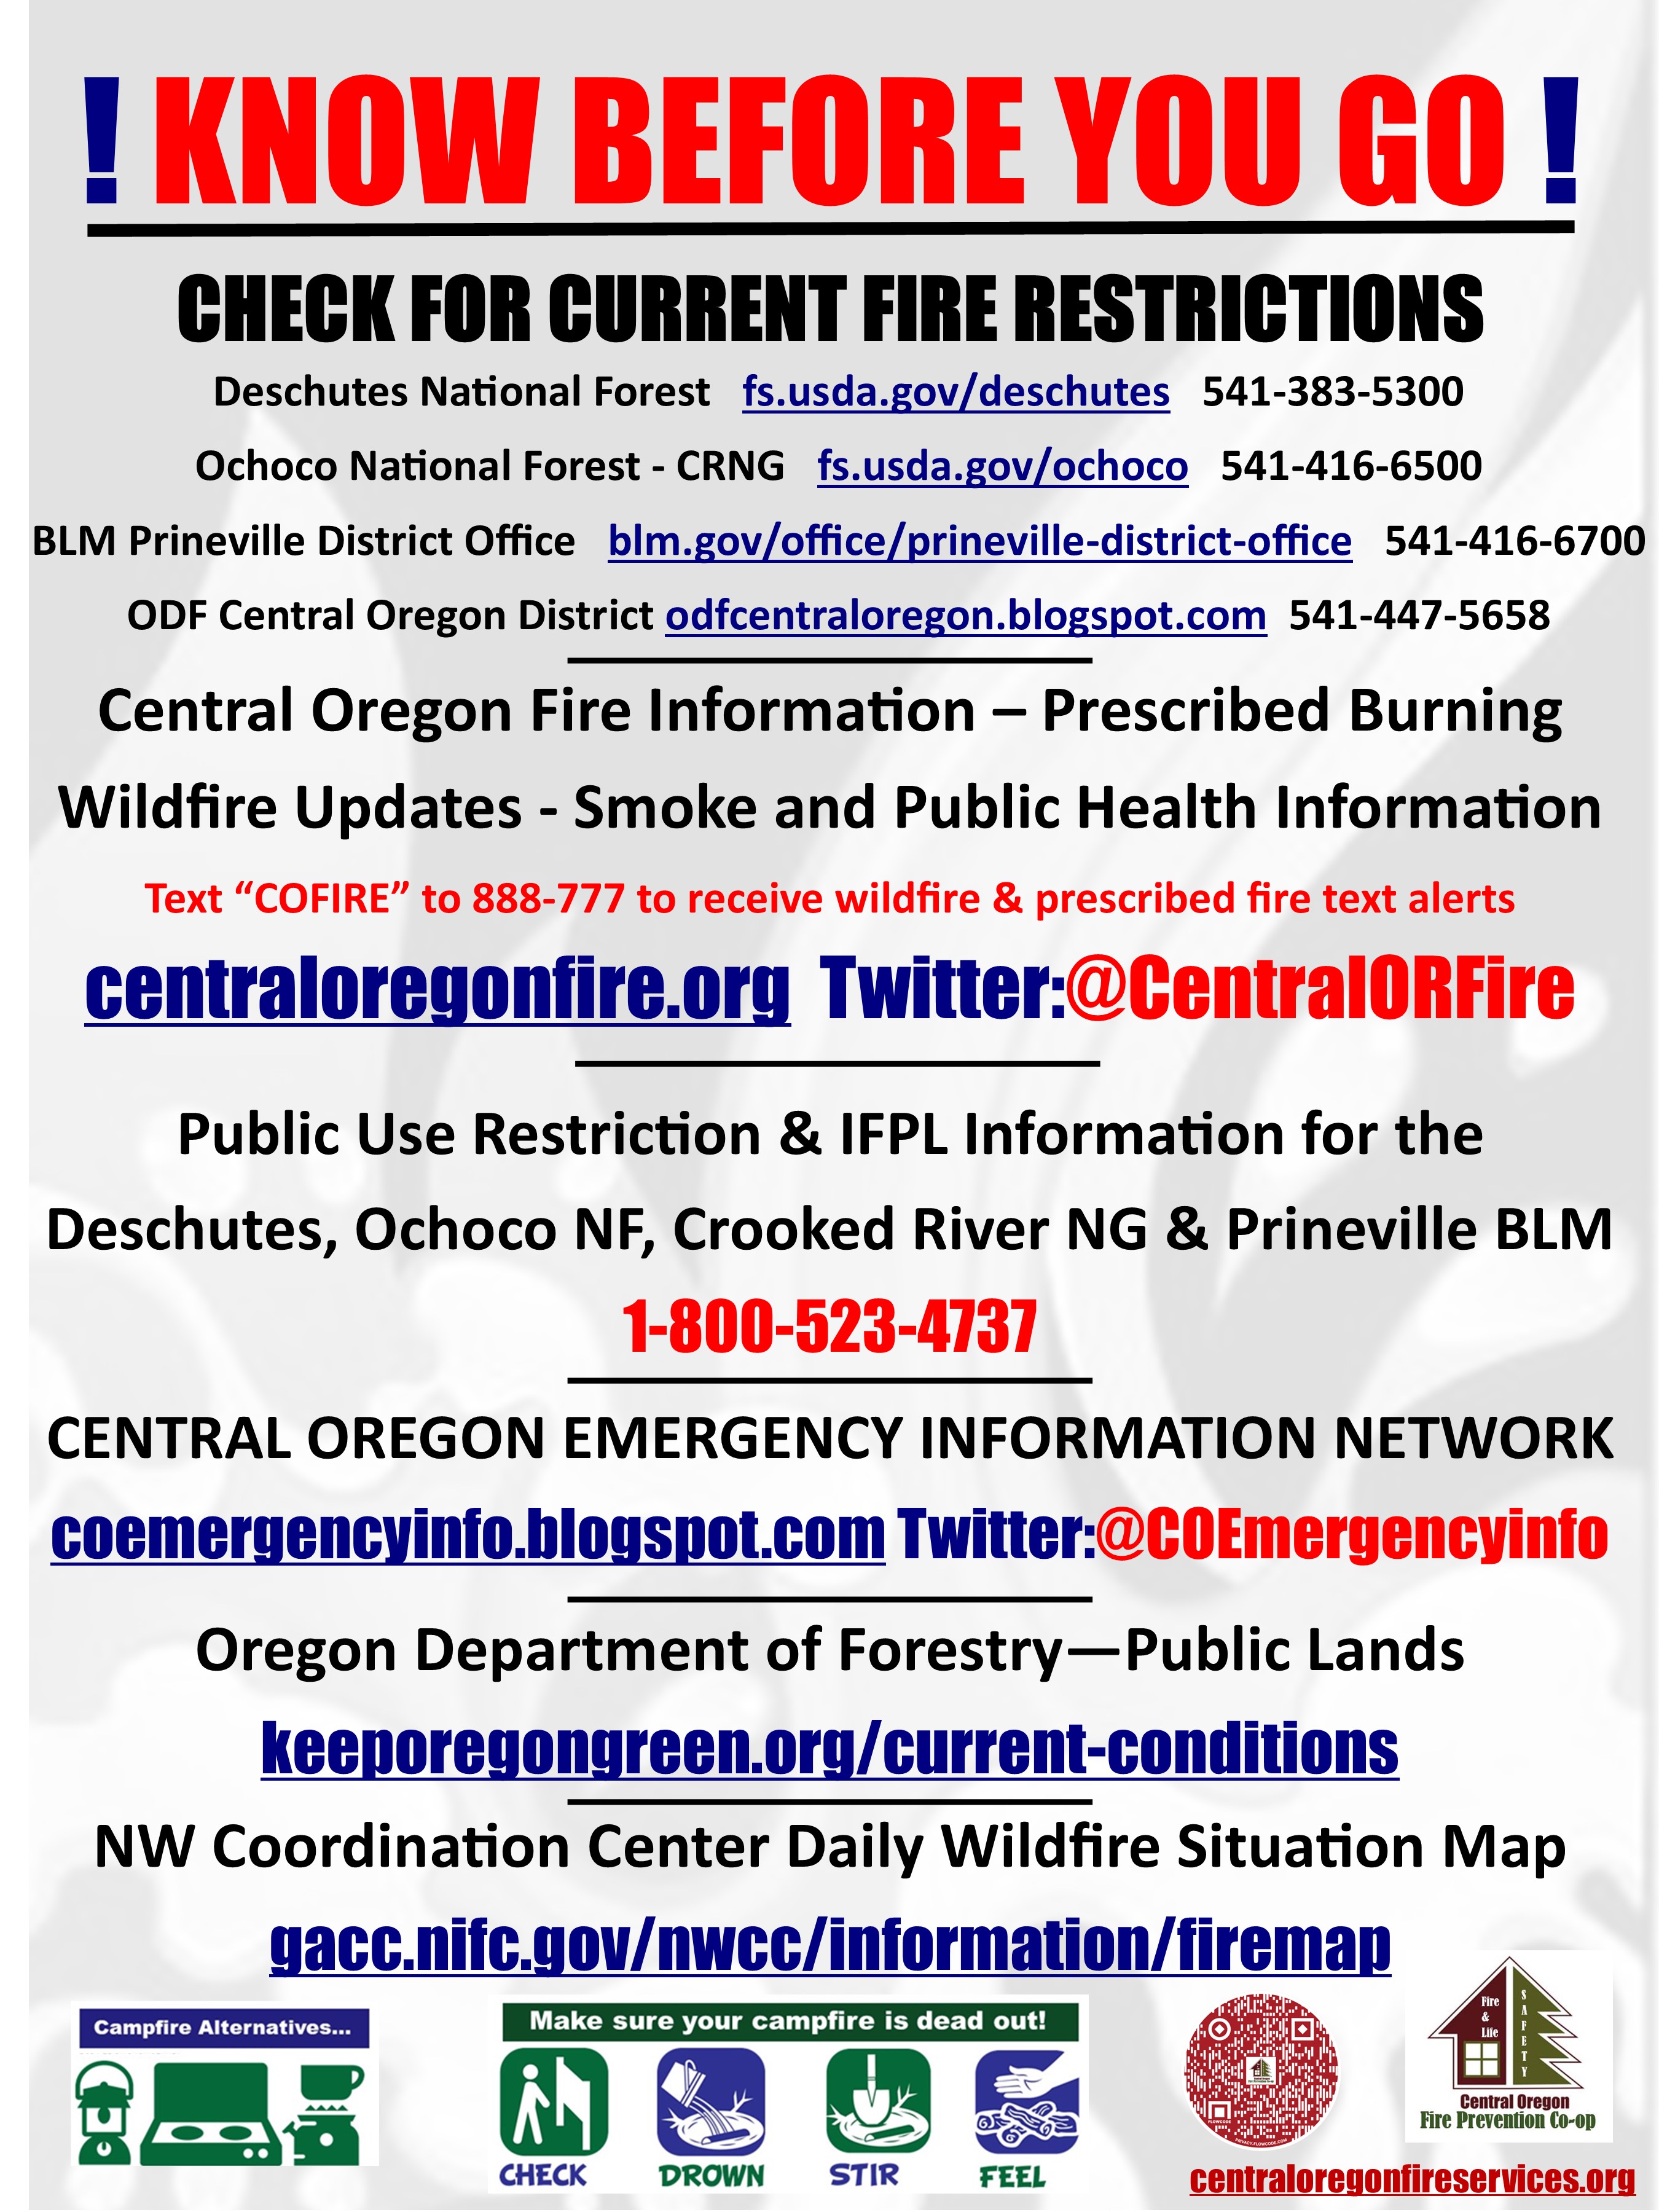 deschutes national forest fire restrictions